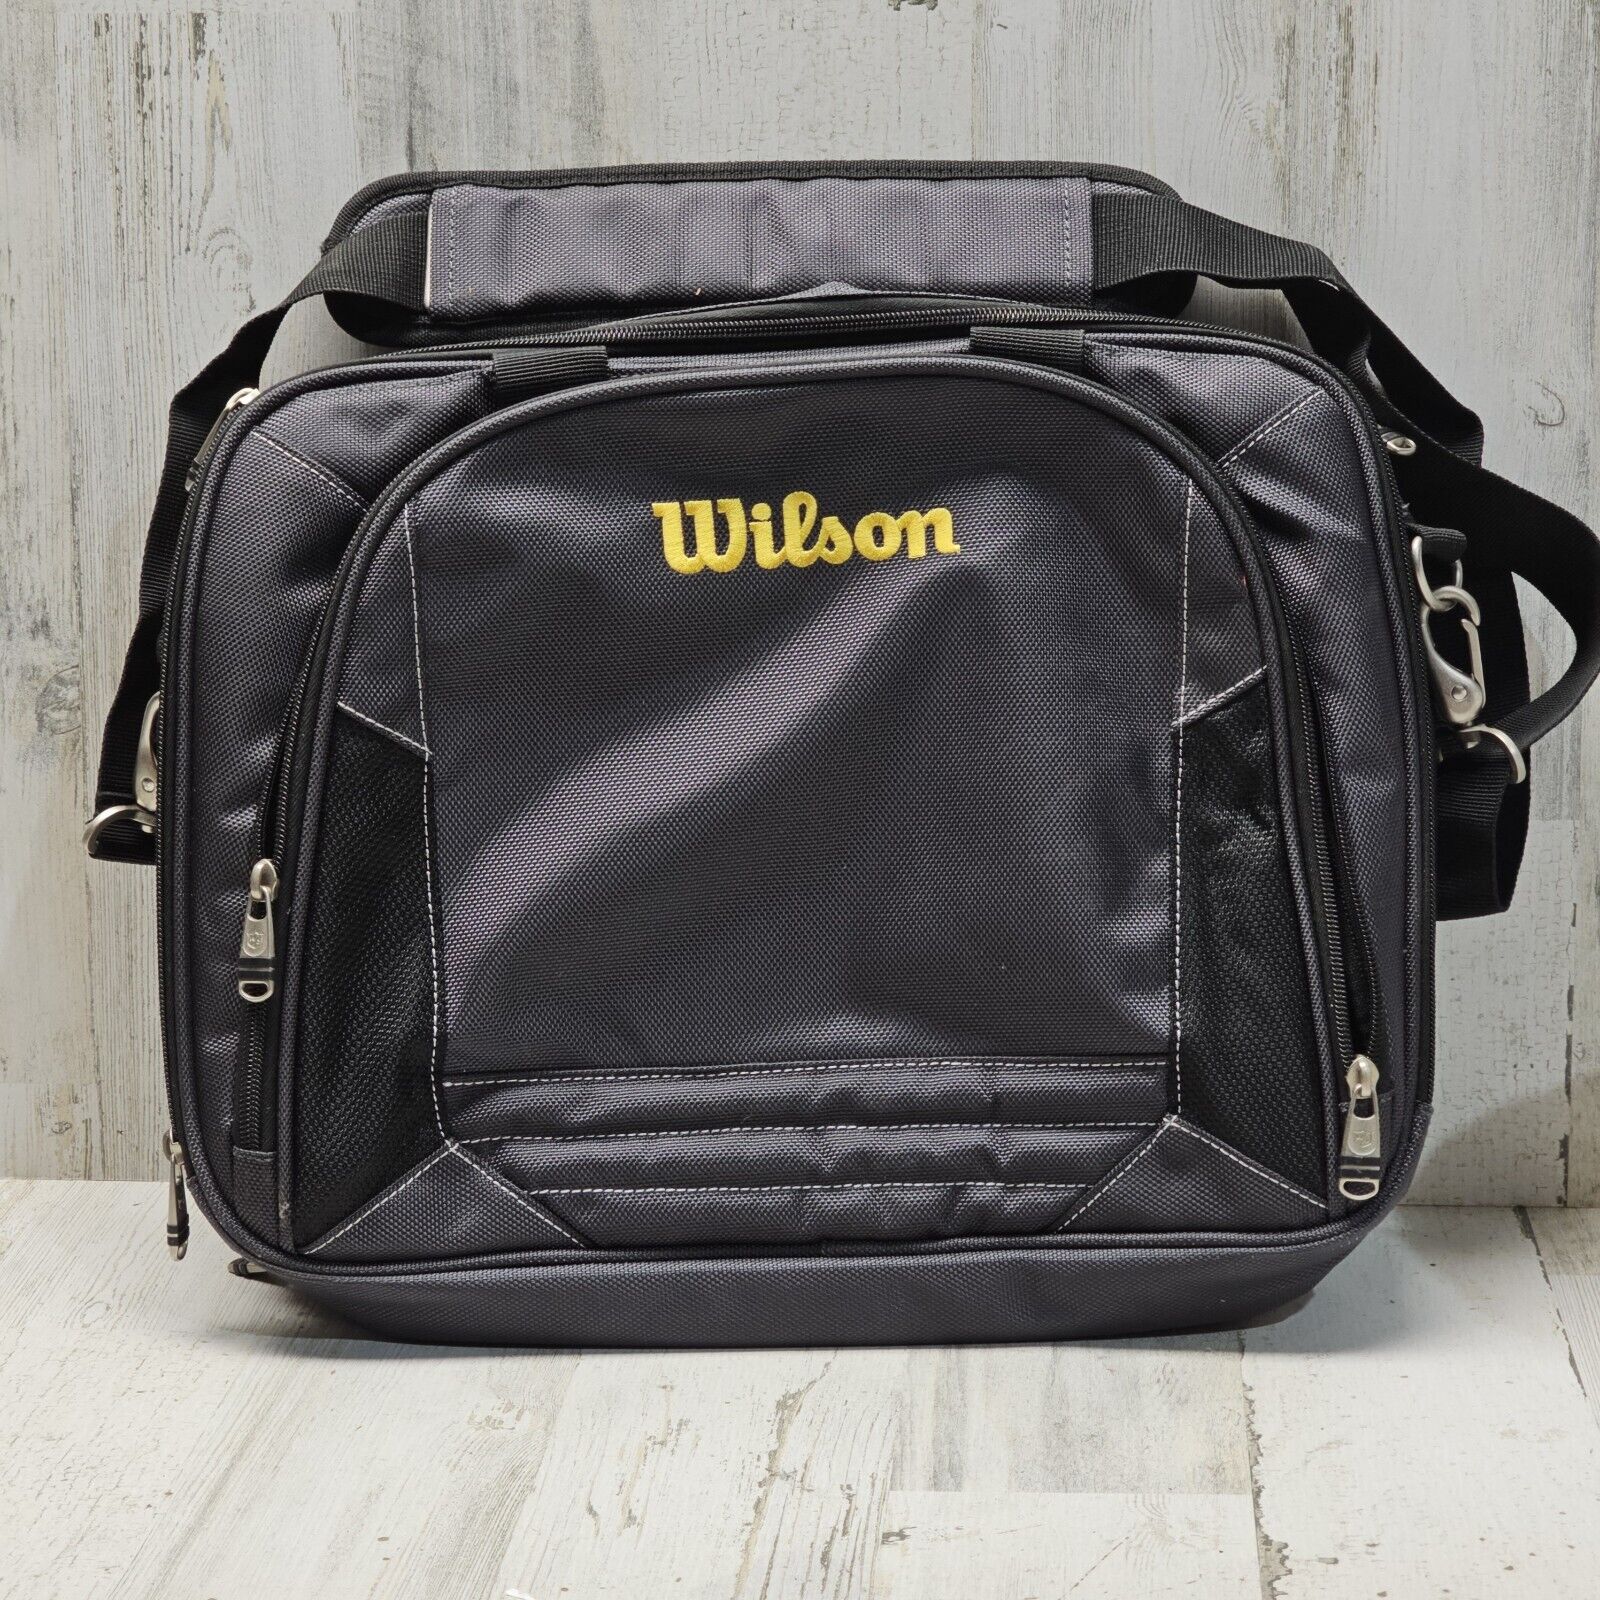 Wilson Logo Laptop Computer Black Case Bag 3 Compartment 16” X 12”